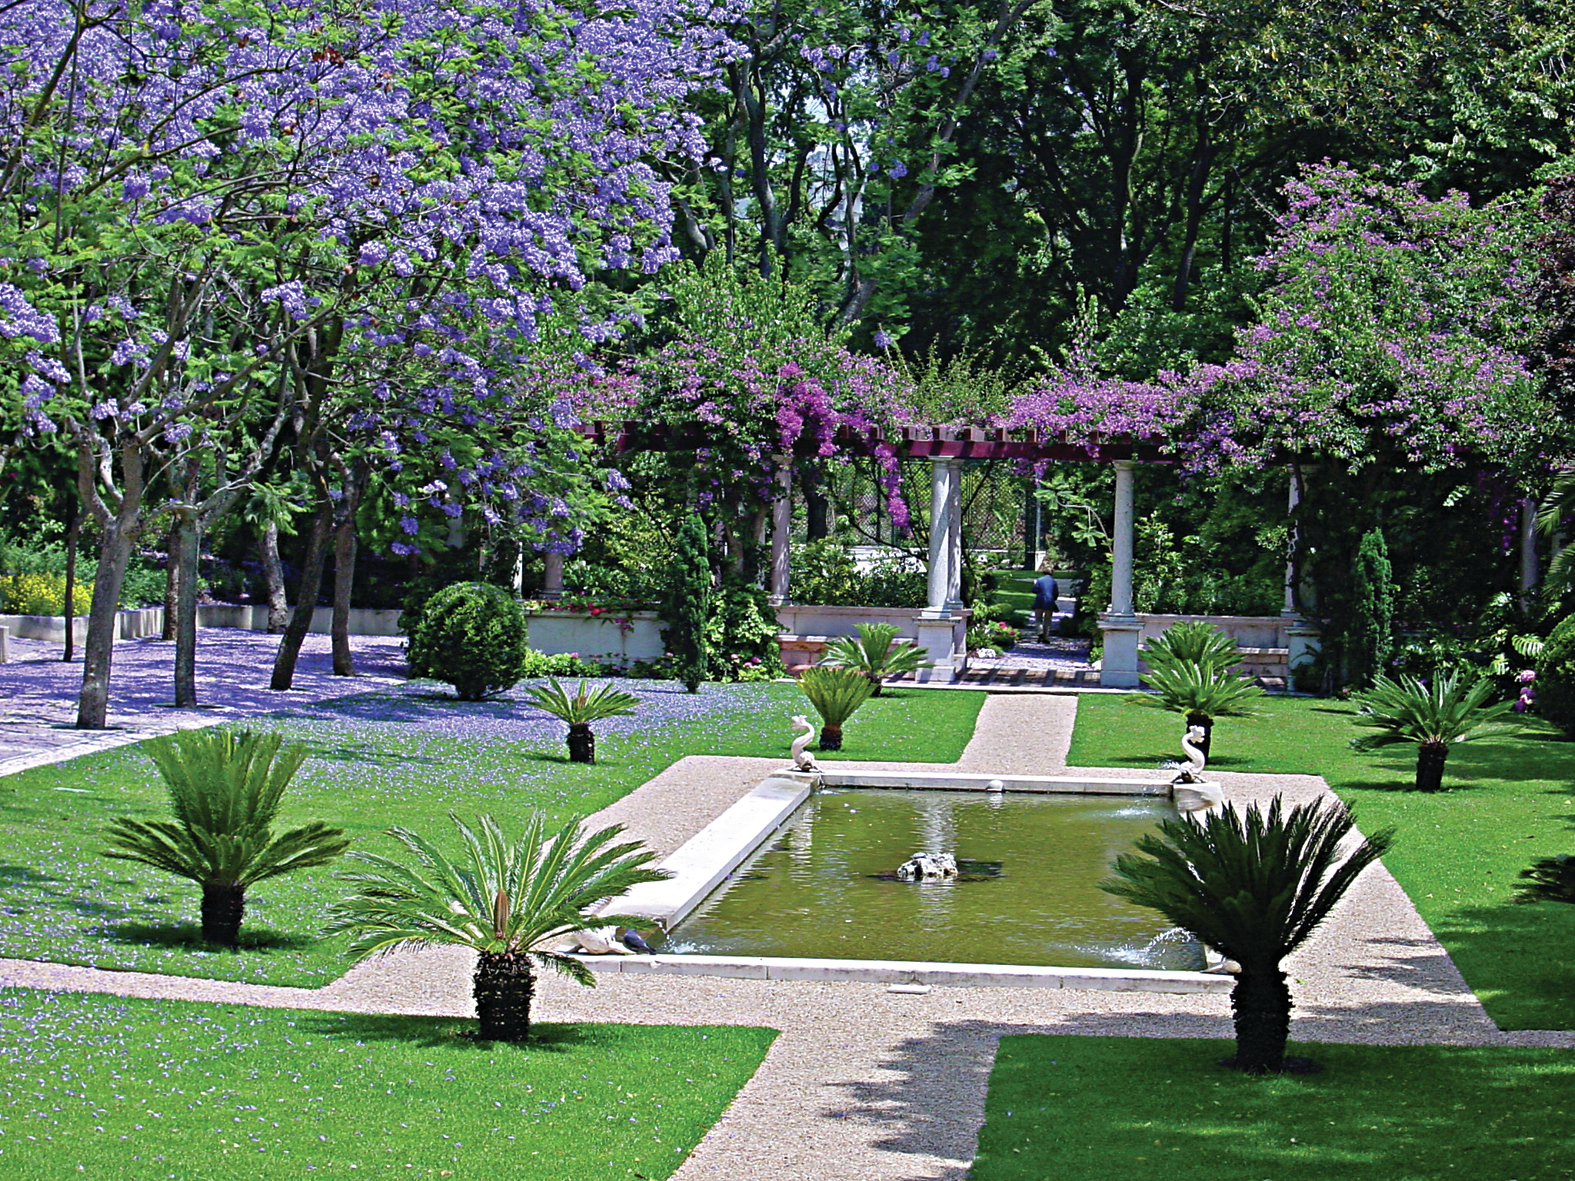 O Jardim do palacete de São Bento, Residência Oficial do primeiro-ministro